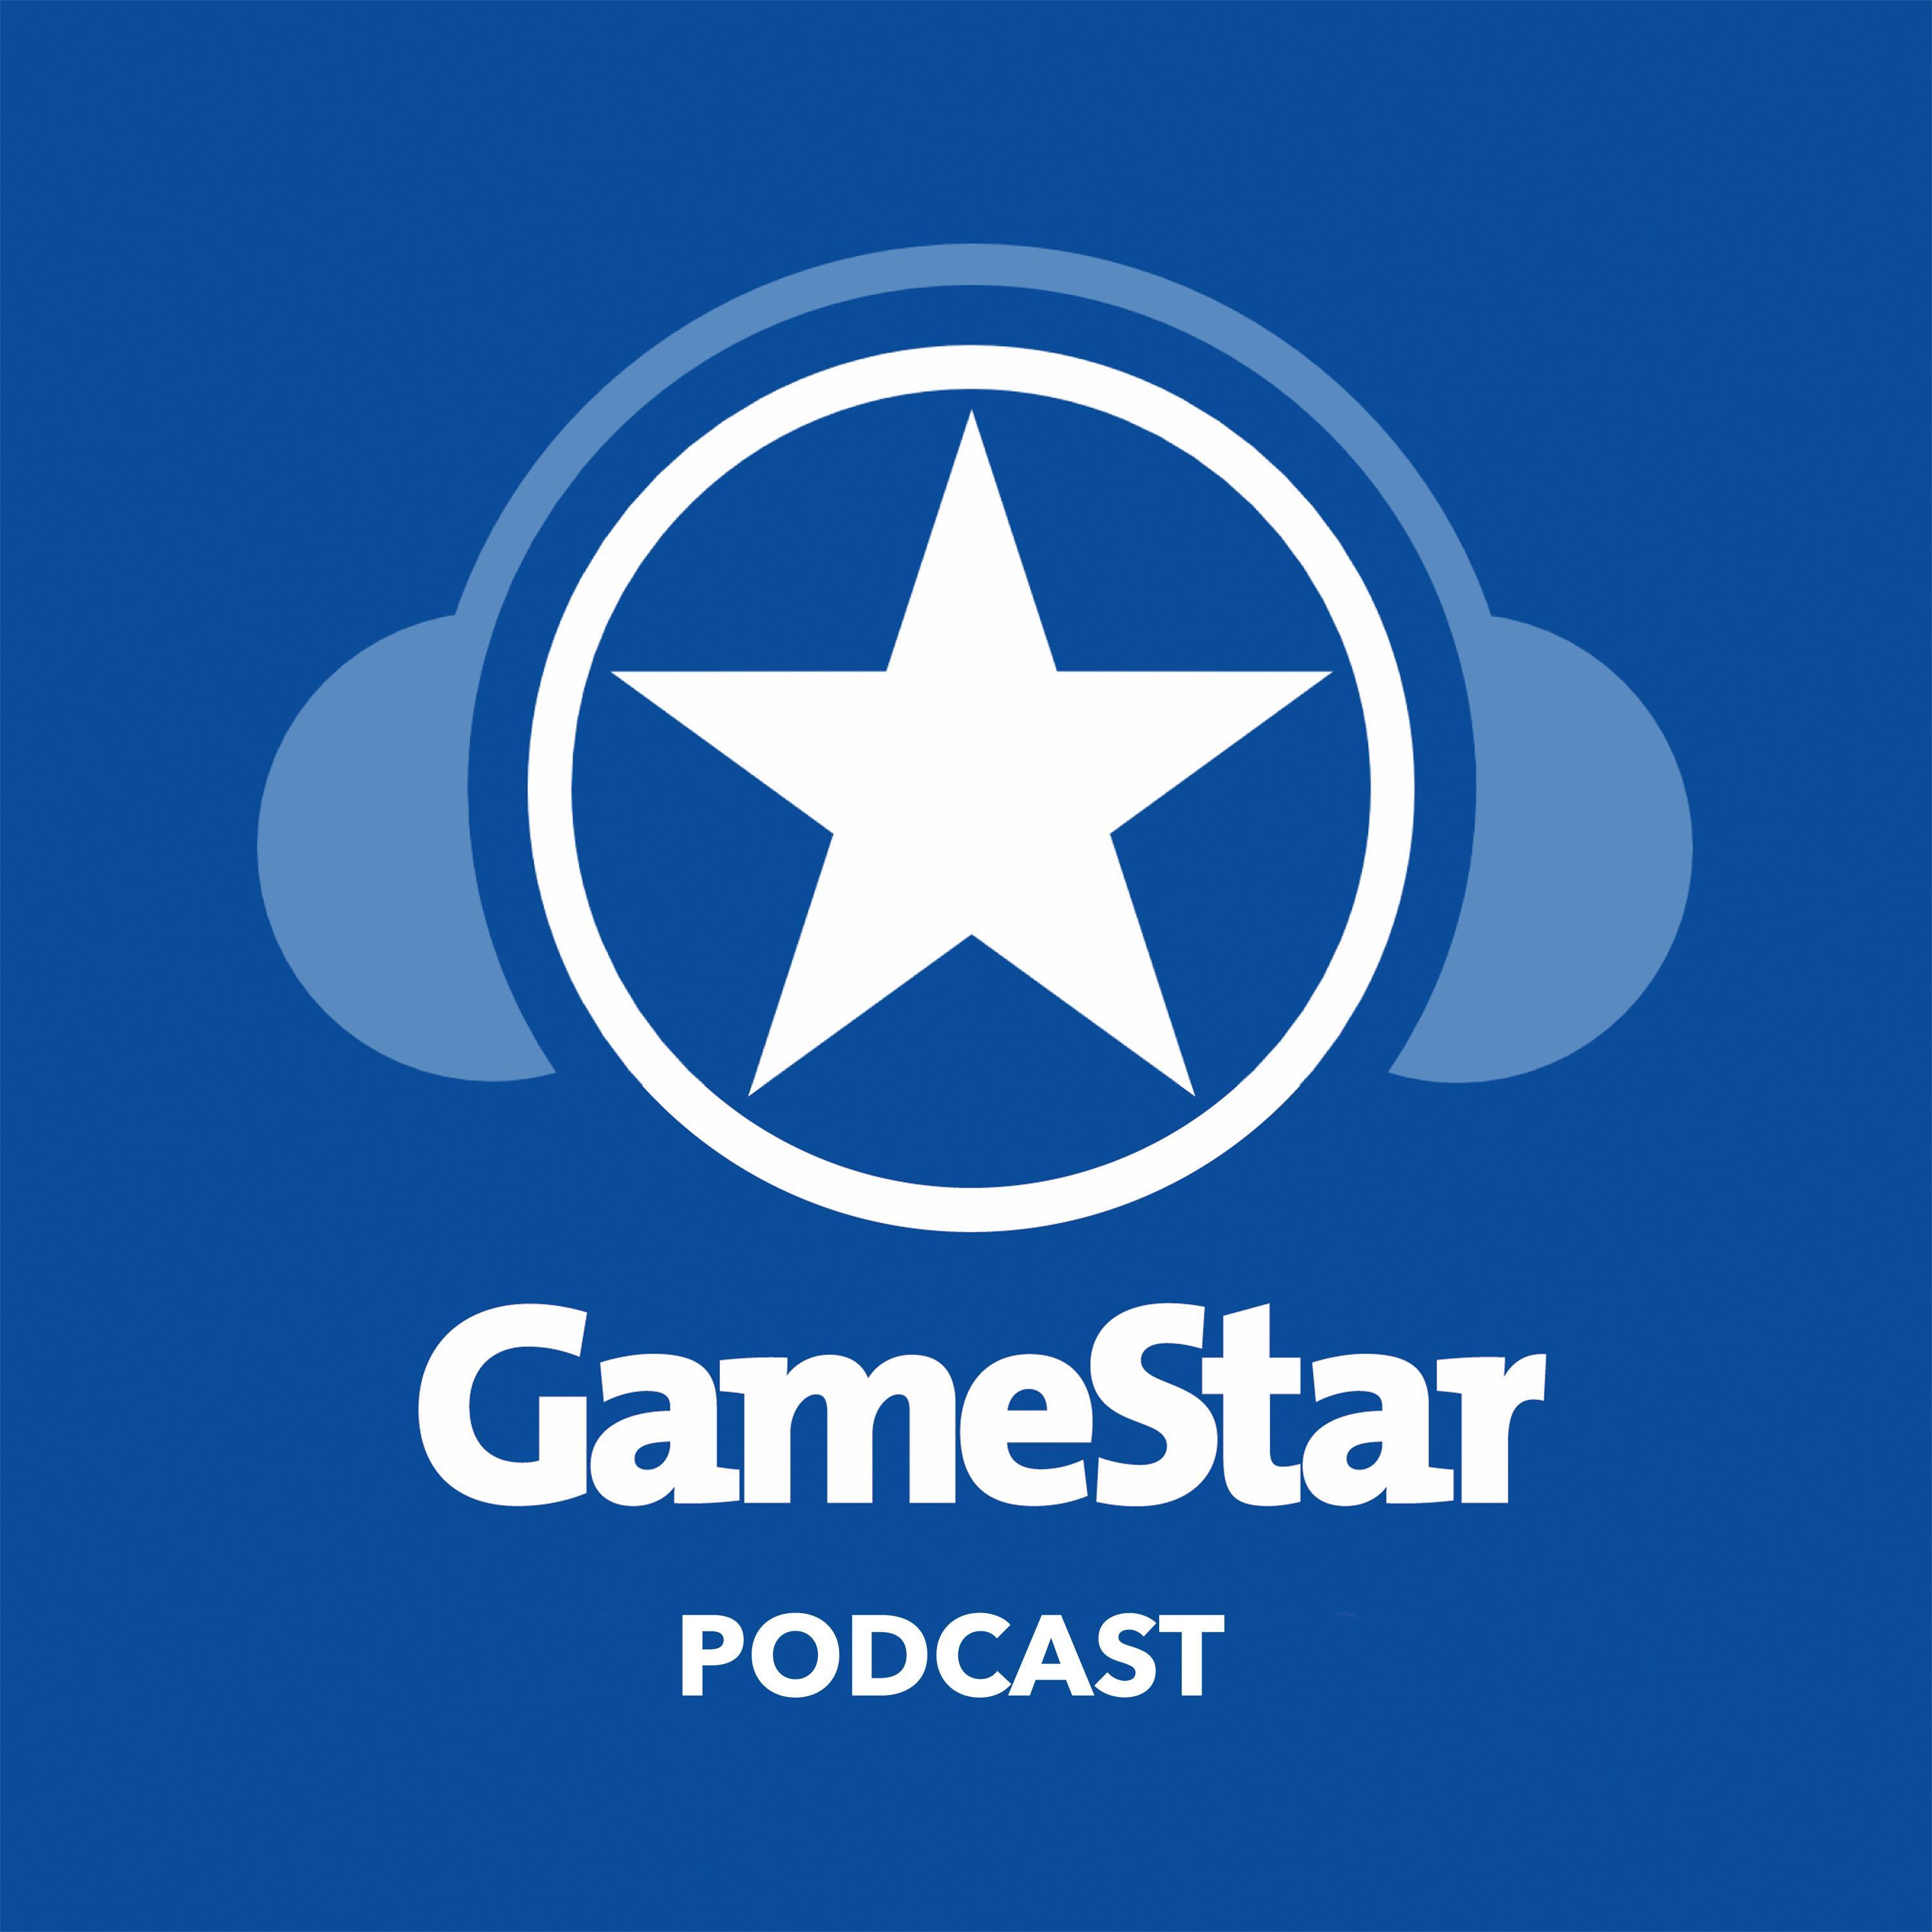 GameStar Podcast:GameStar